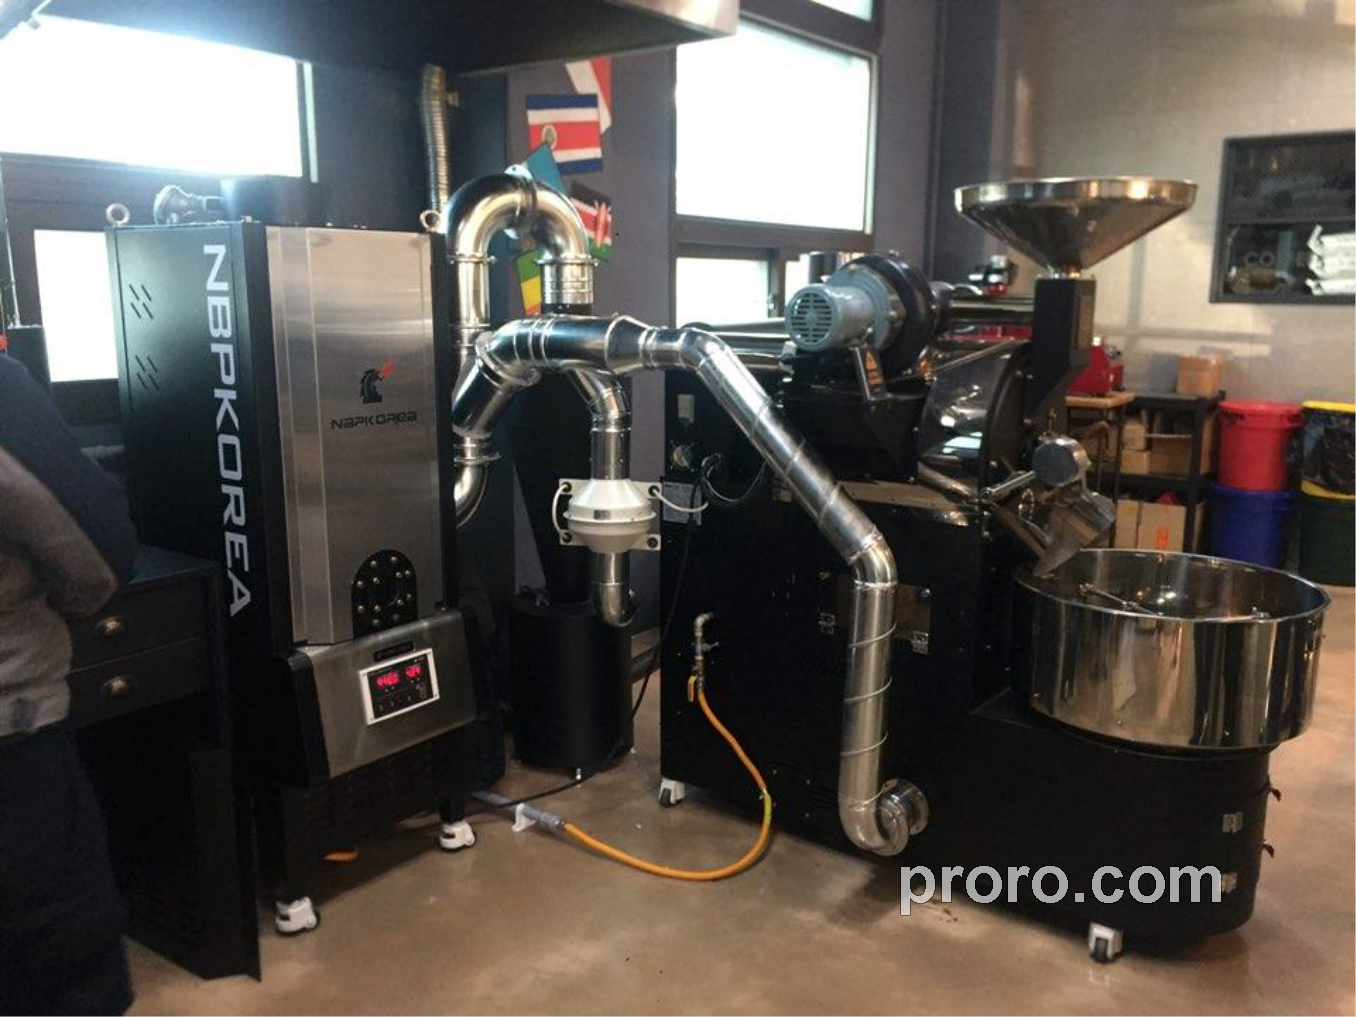 PROASTER 泰焕咖啡烘焙机 除烟除味 后燃机 安装案例 - ALL THAT COFFEE咖啡店。